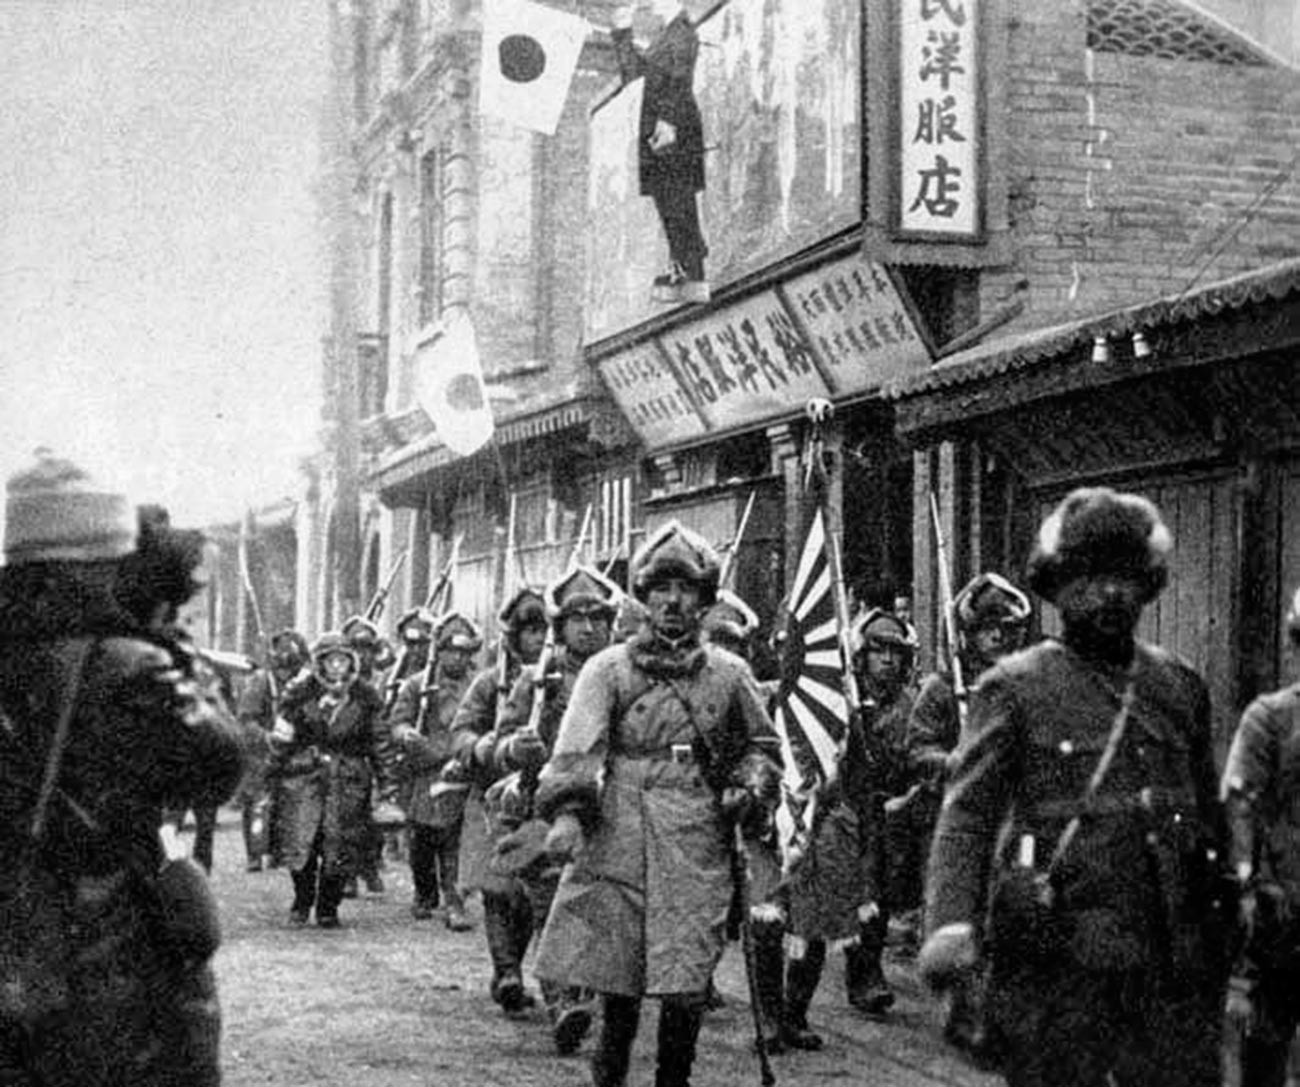 Tropas japonesas entrando em Chinchow.

